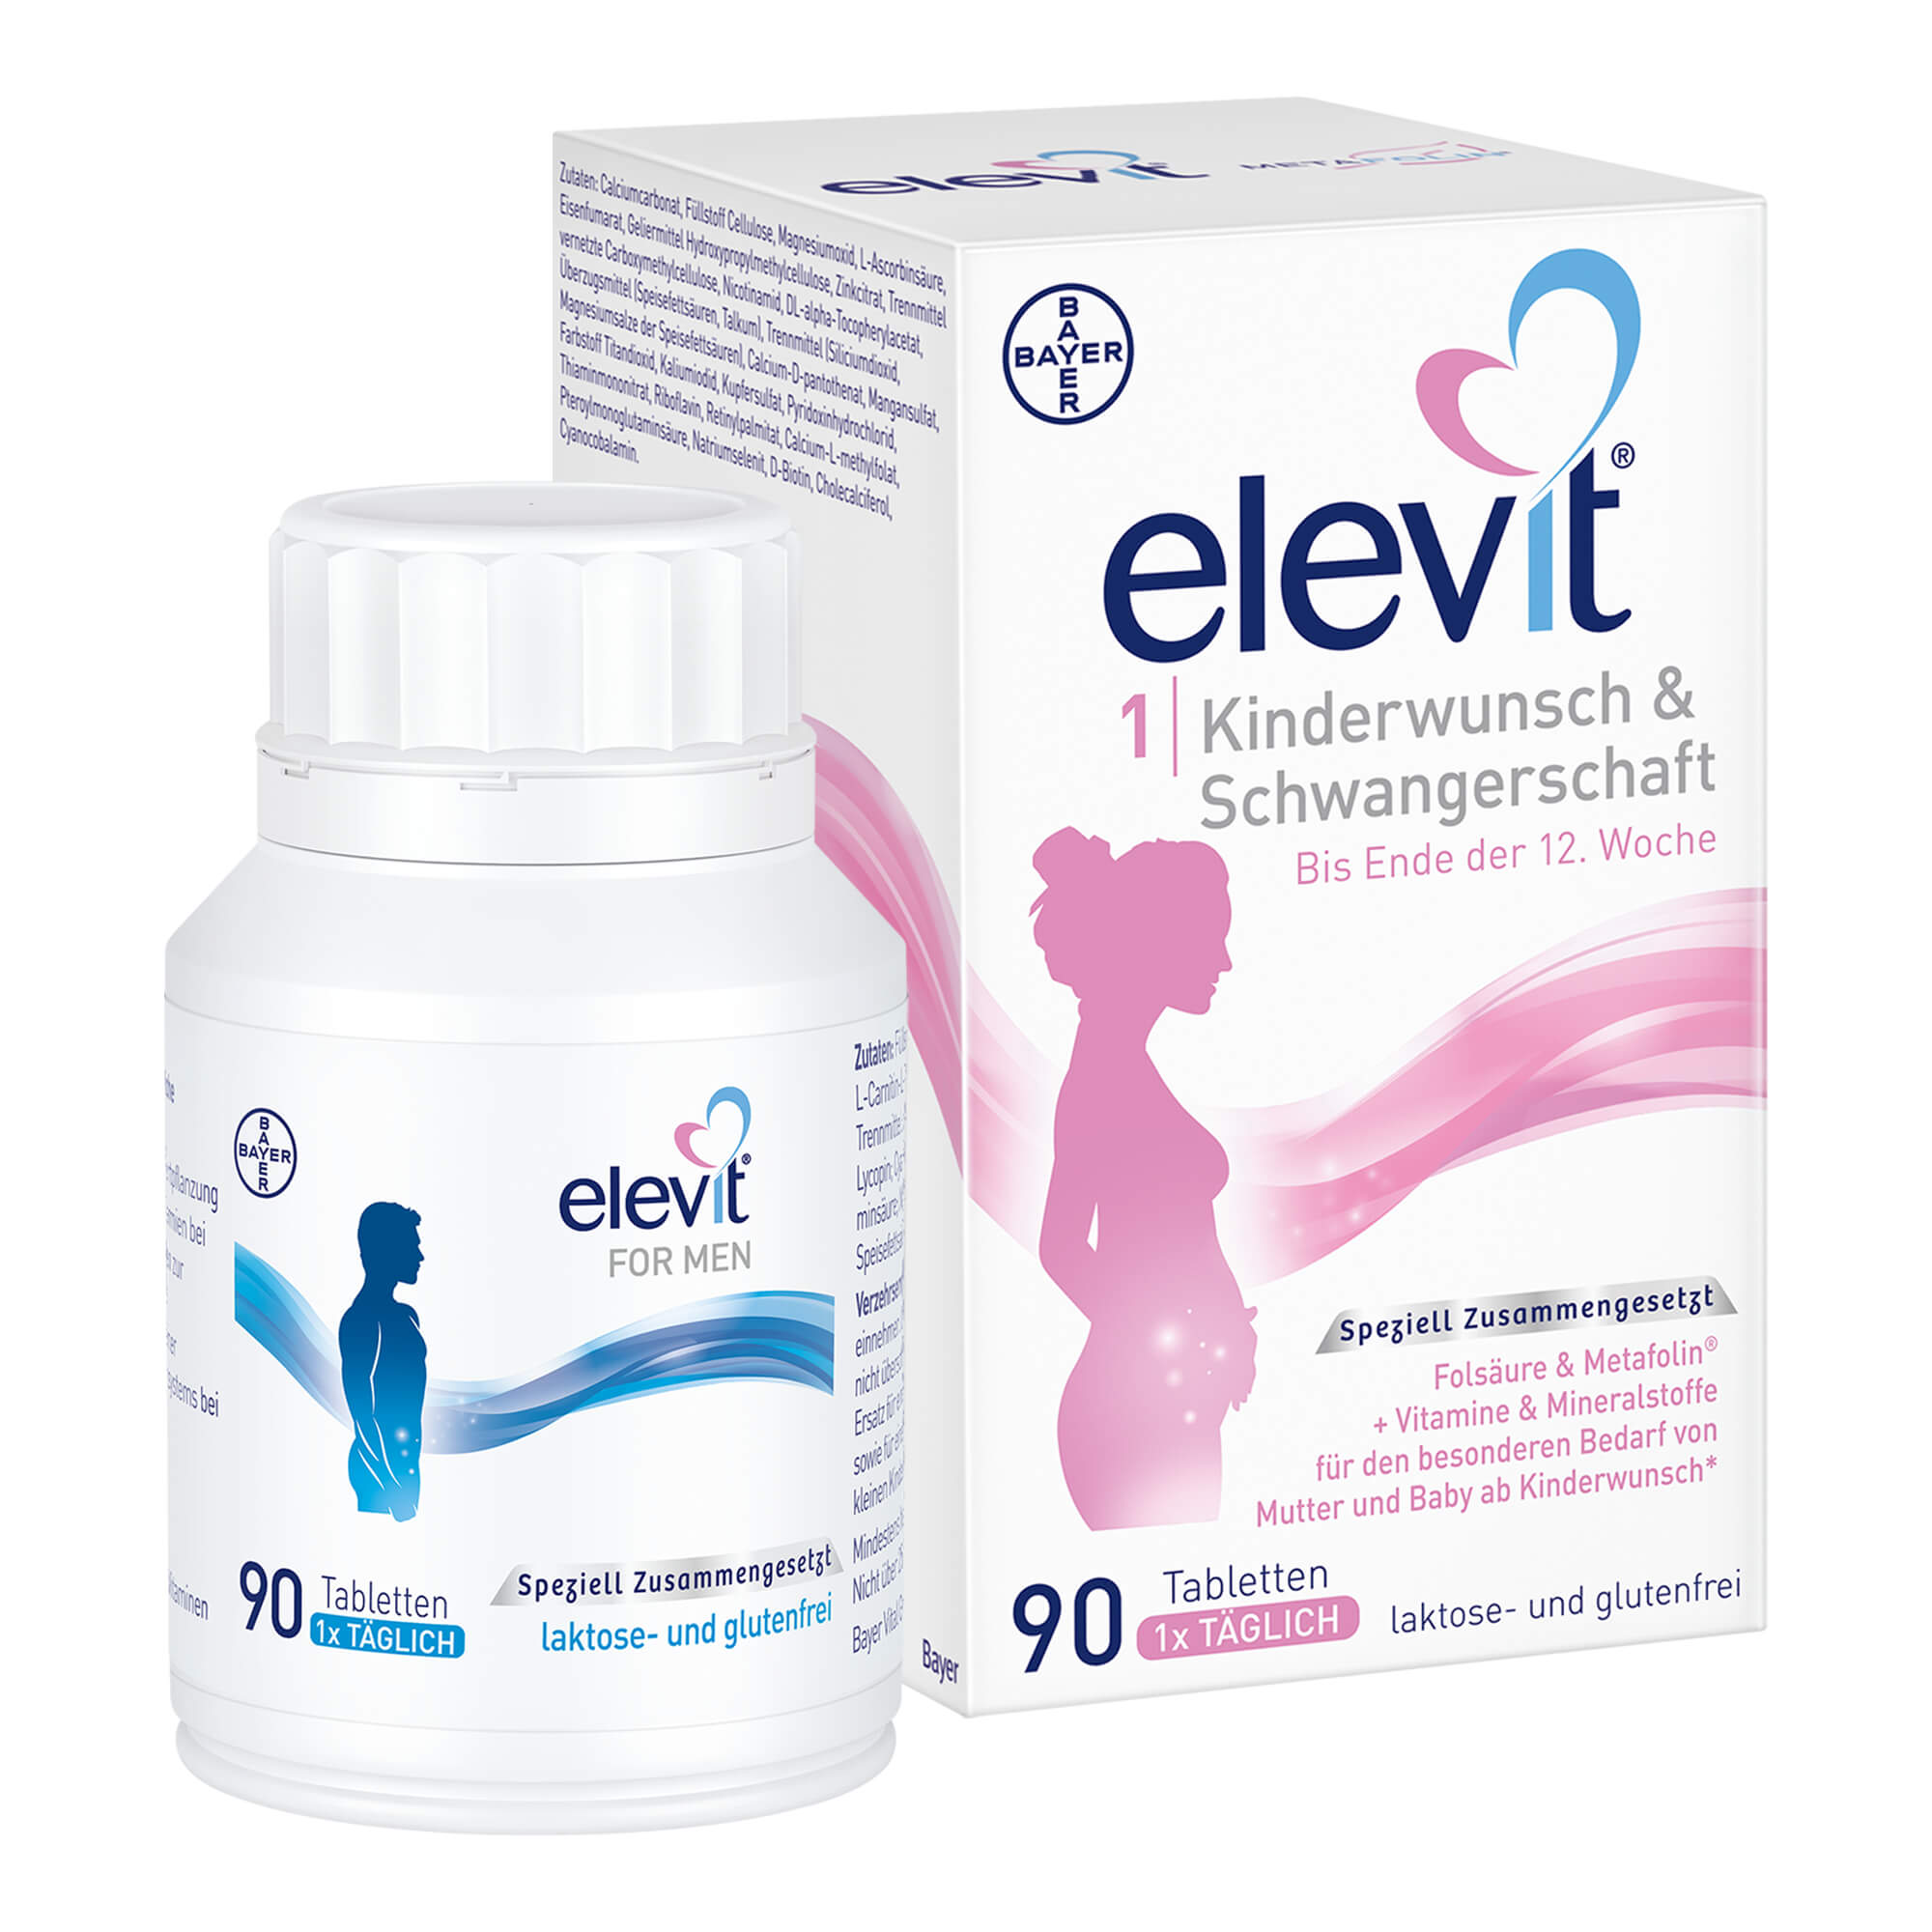 Mit 90 Elevit 1 Kinderwunsch & Schwangerschaft Tabletten für Frauen & 90 Elevit FOR MEN Tabletten für Männer.